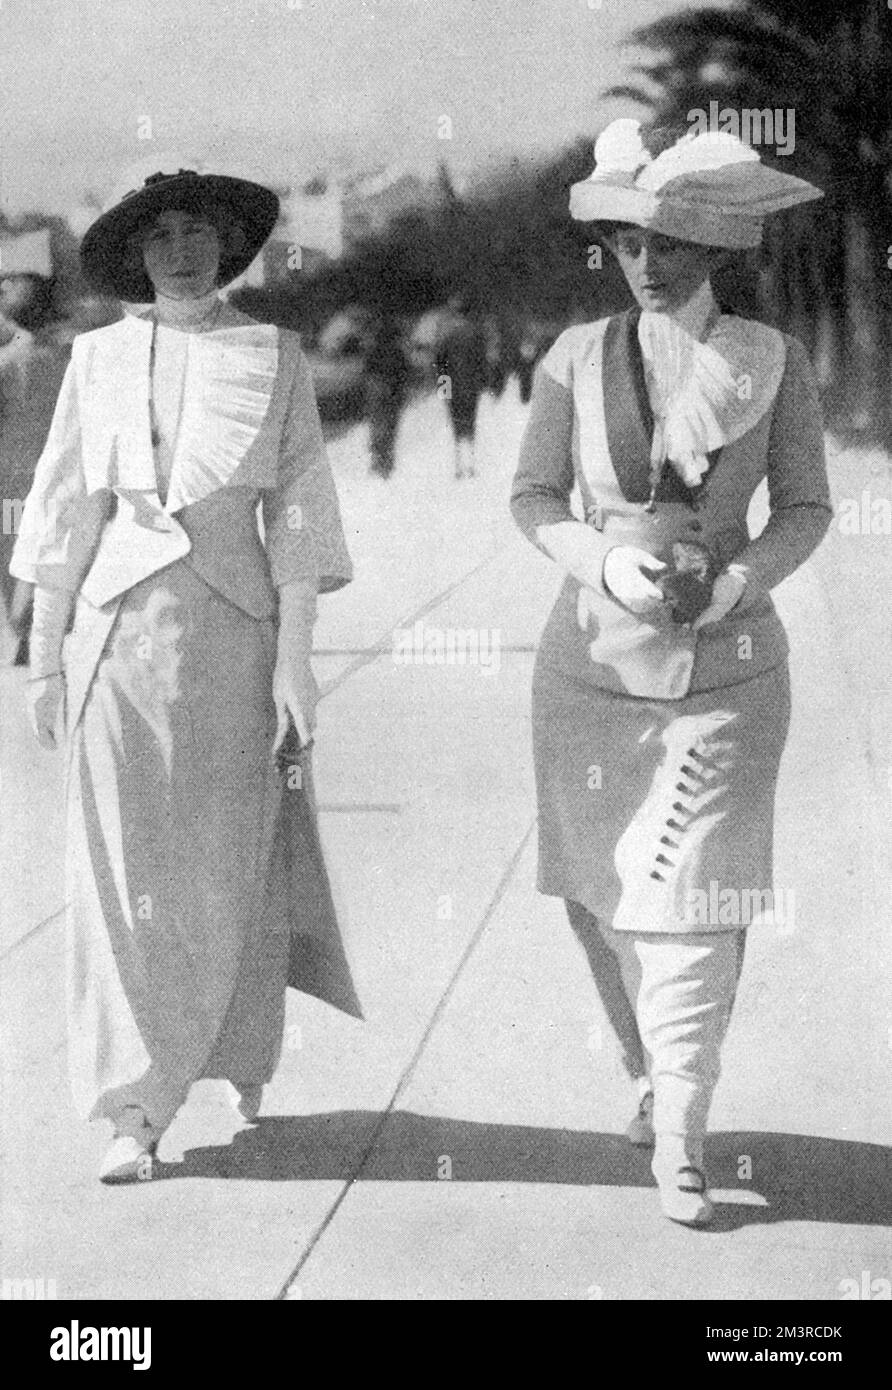 L'actrice américaine Maxine Elliott (1868-1940), photographiée marcher avec un ami à Cannes en 1912. Maxine est sur la droite. Deux décennies plus tard, elle divertirait de nombreuses personnalités célèbres dans sa maison de la Riviera, le Château de l'Horizon. 1912 Banque D'Images